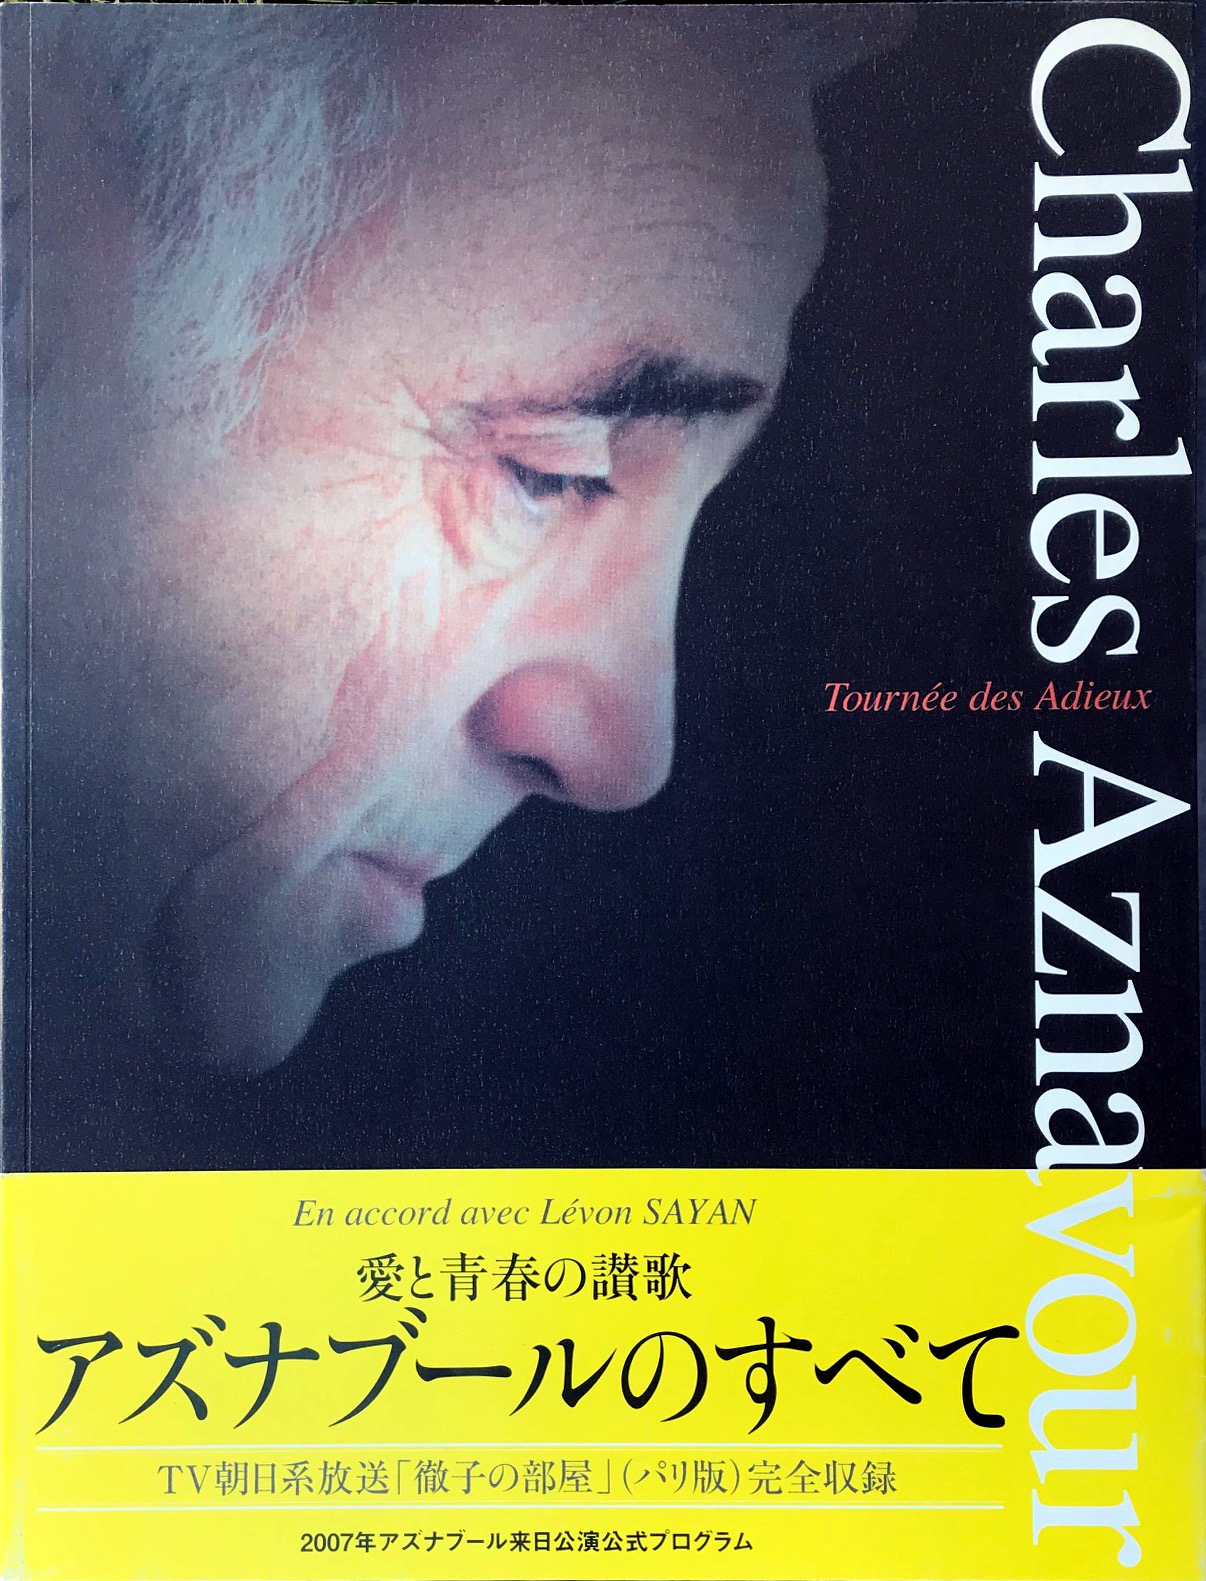 Charles Aznavour programme tournée Japon 2007